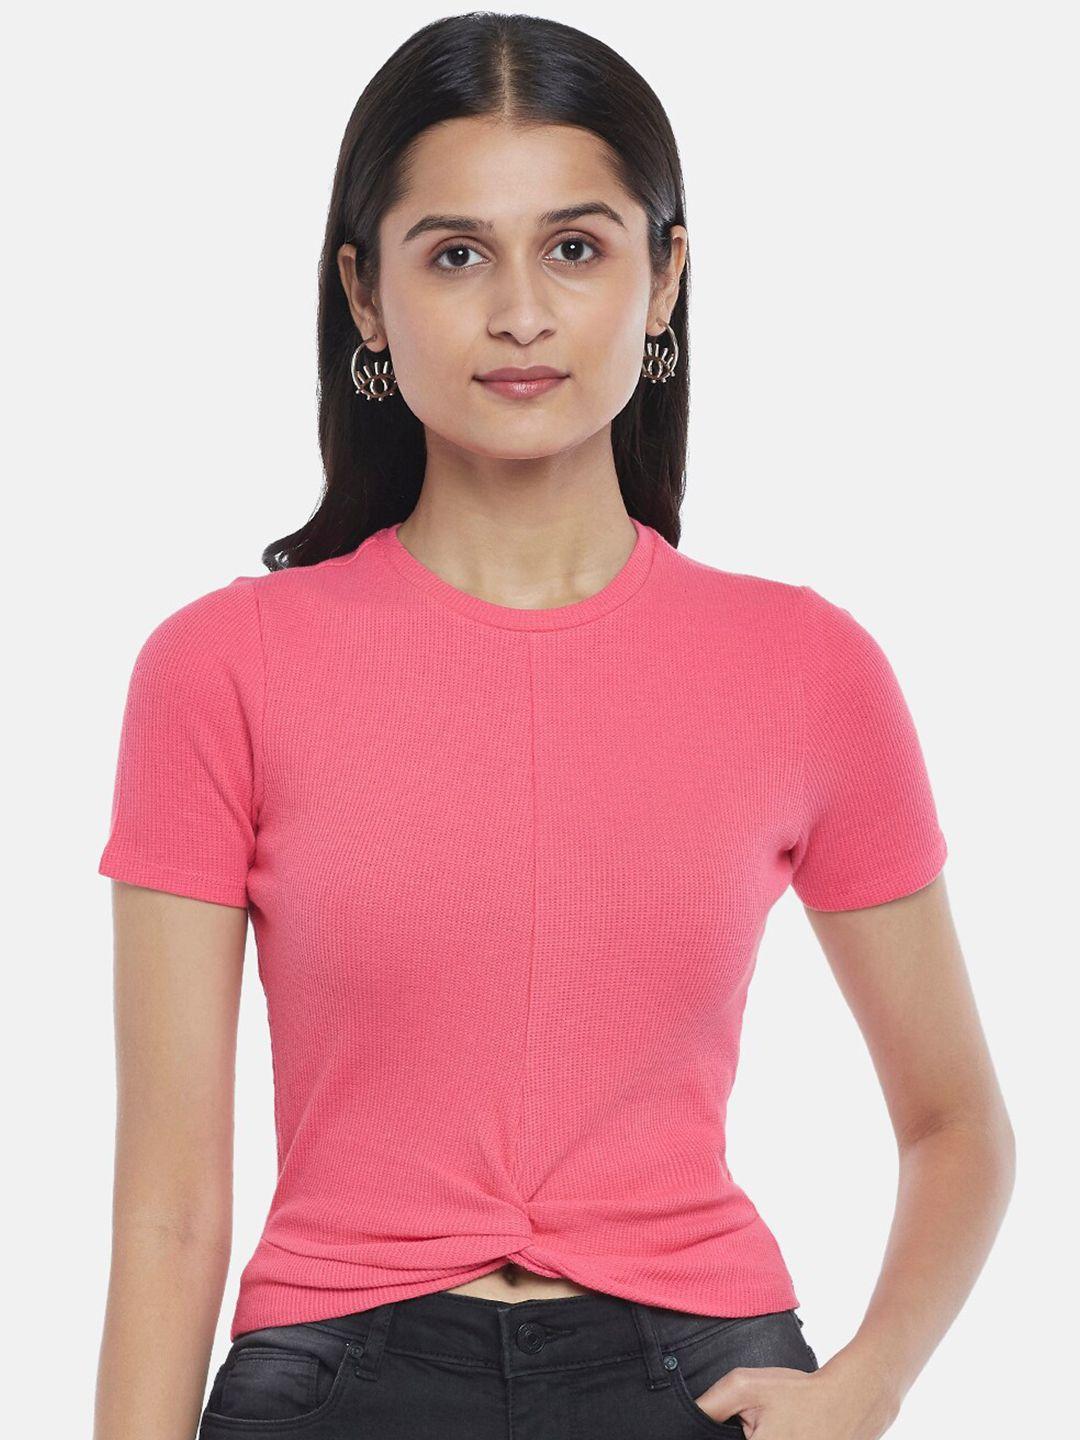 people-women-pink-t-shirt